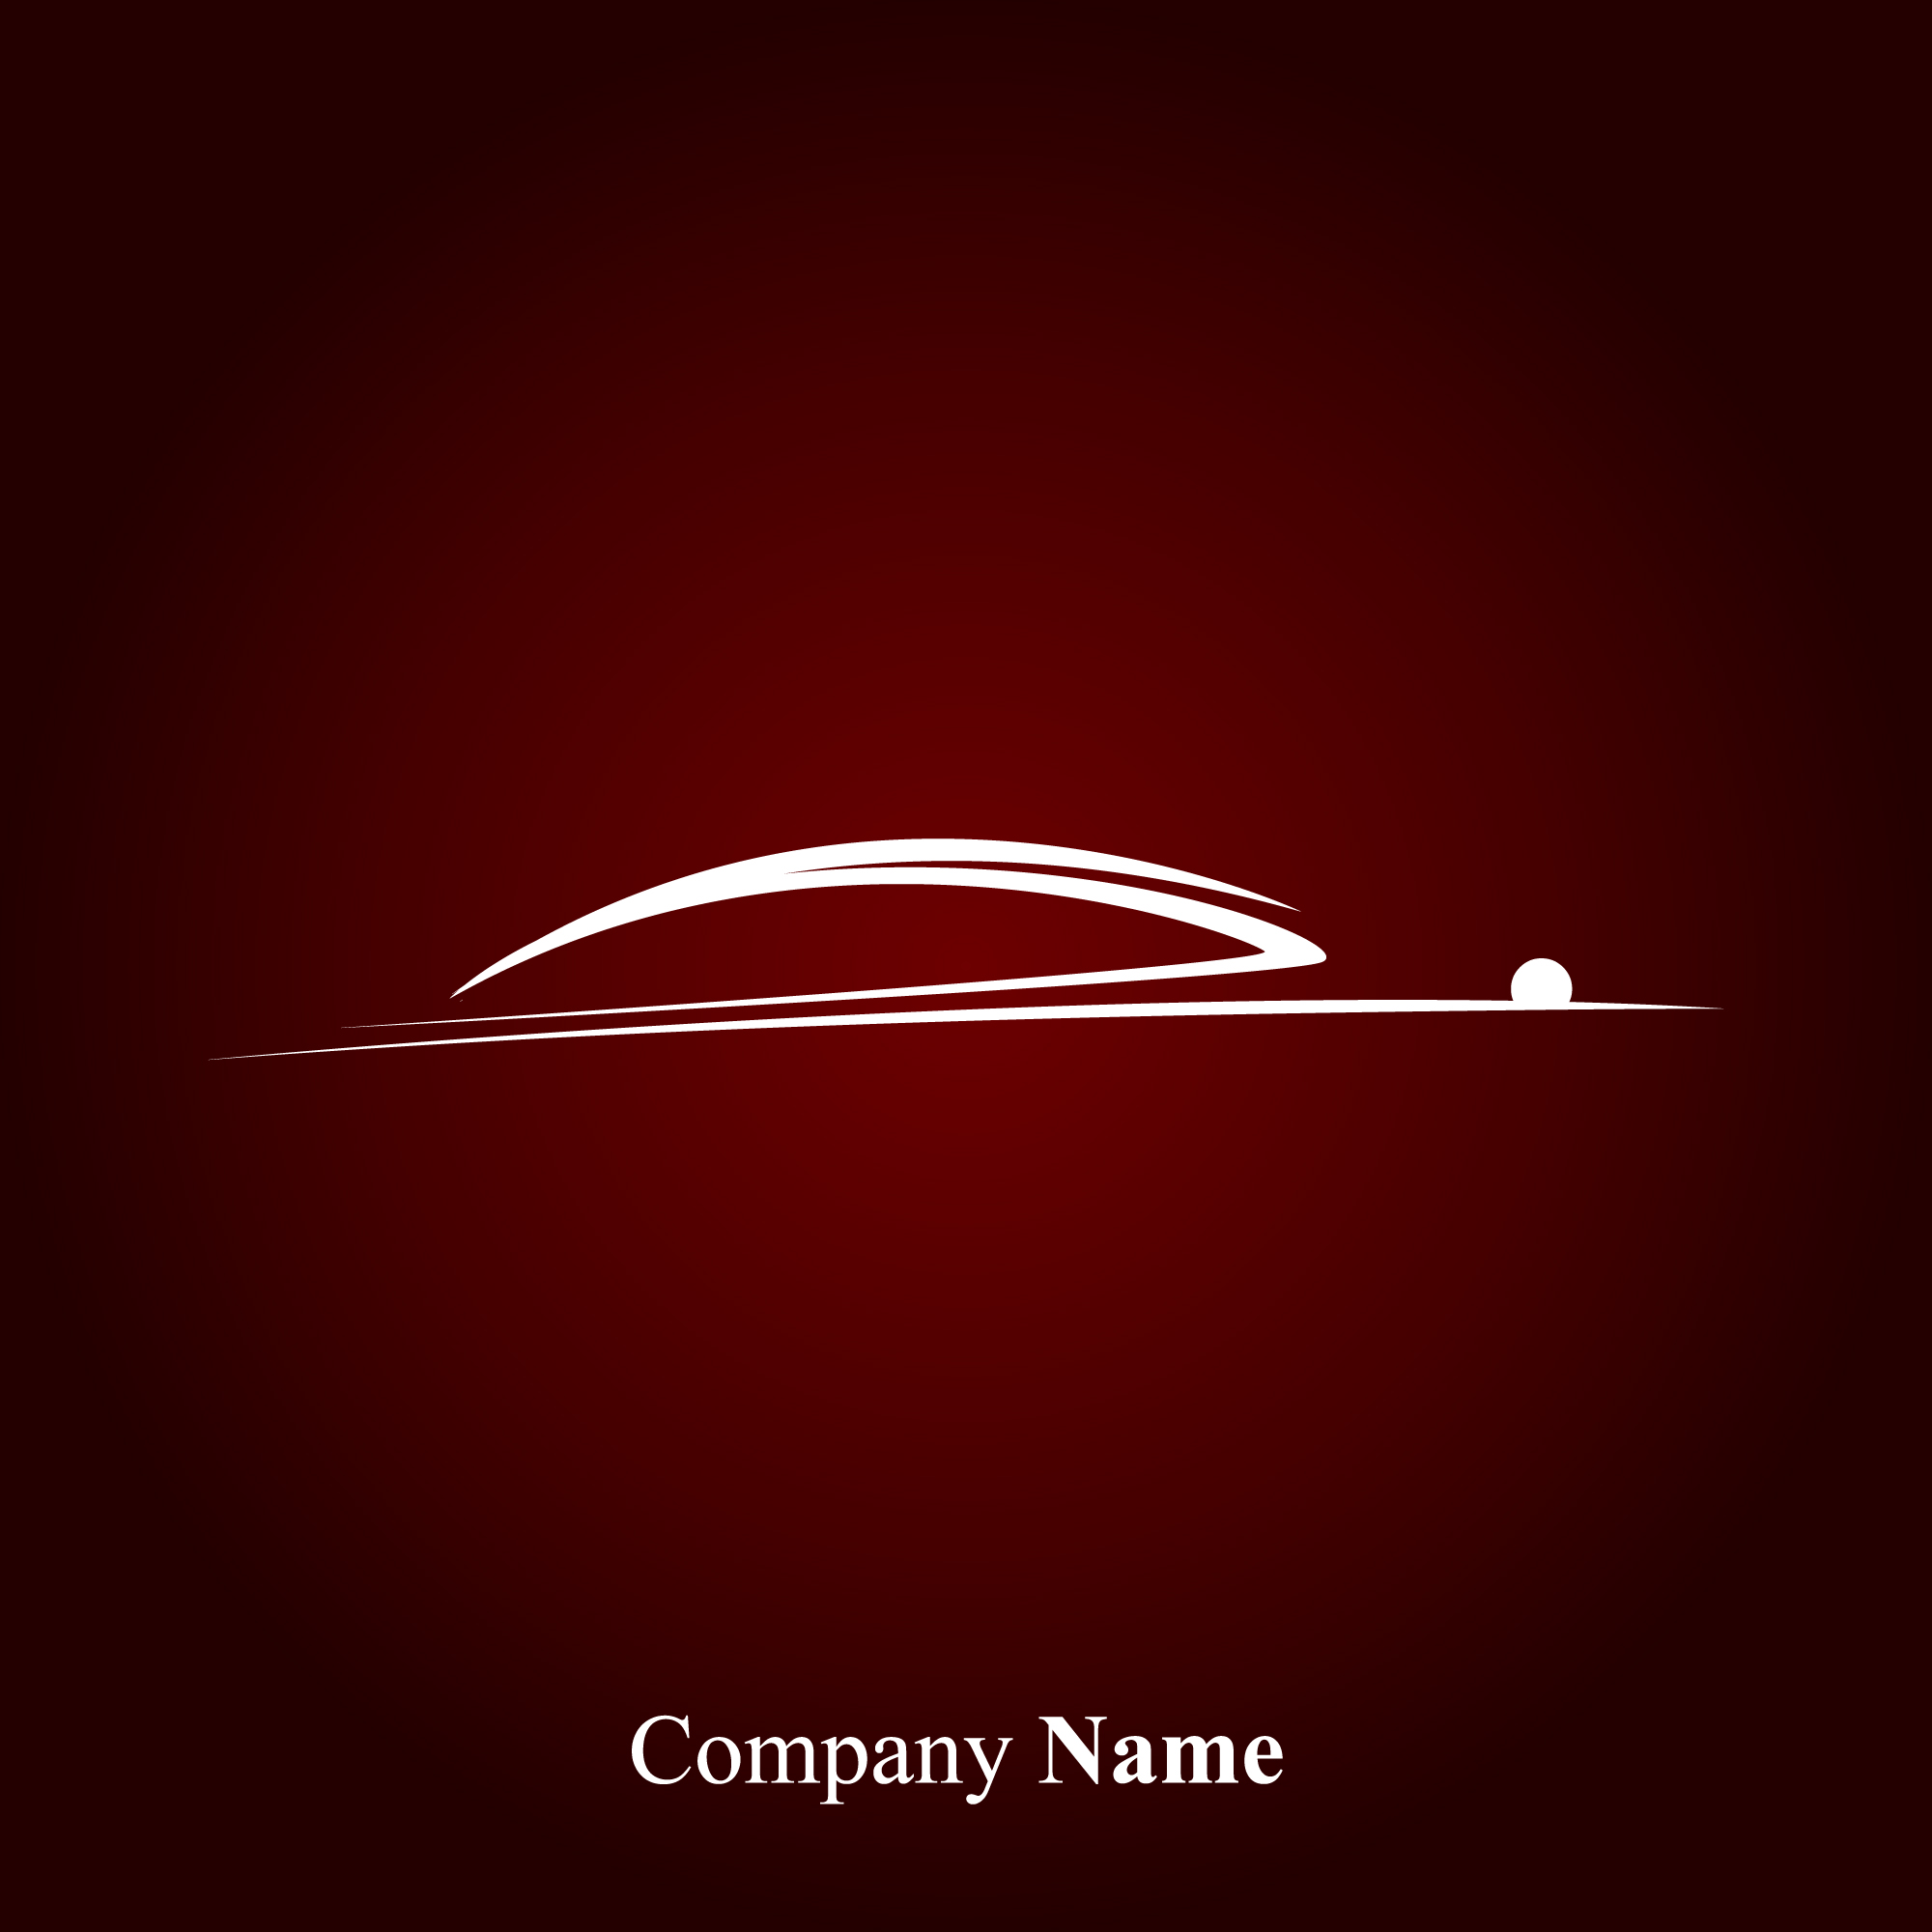 Bộ sưu tập vector car logos miễn phí cho dự án của bạn